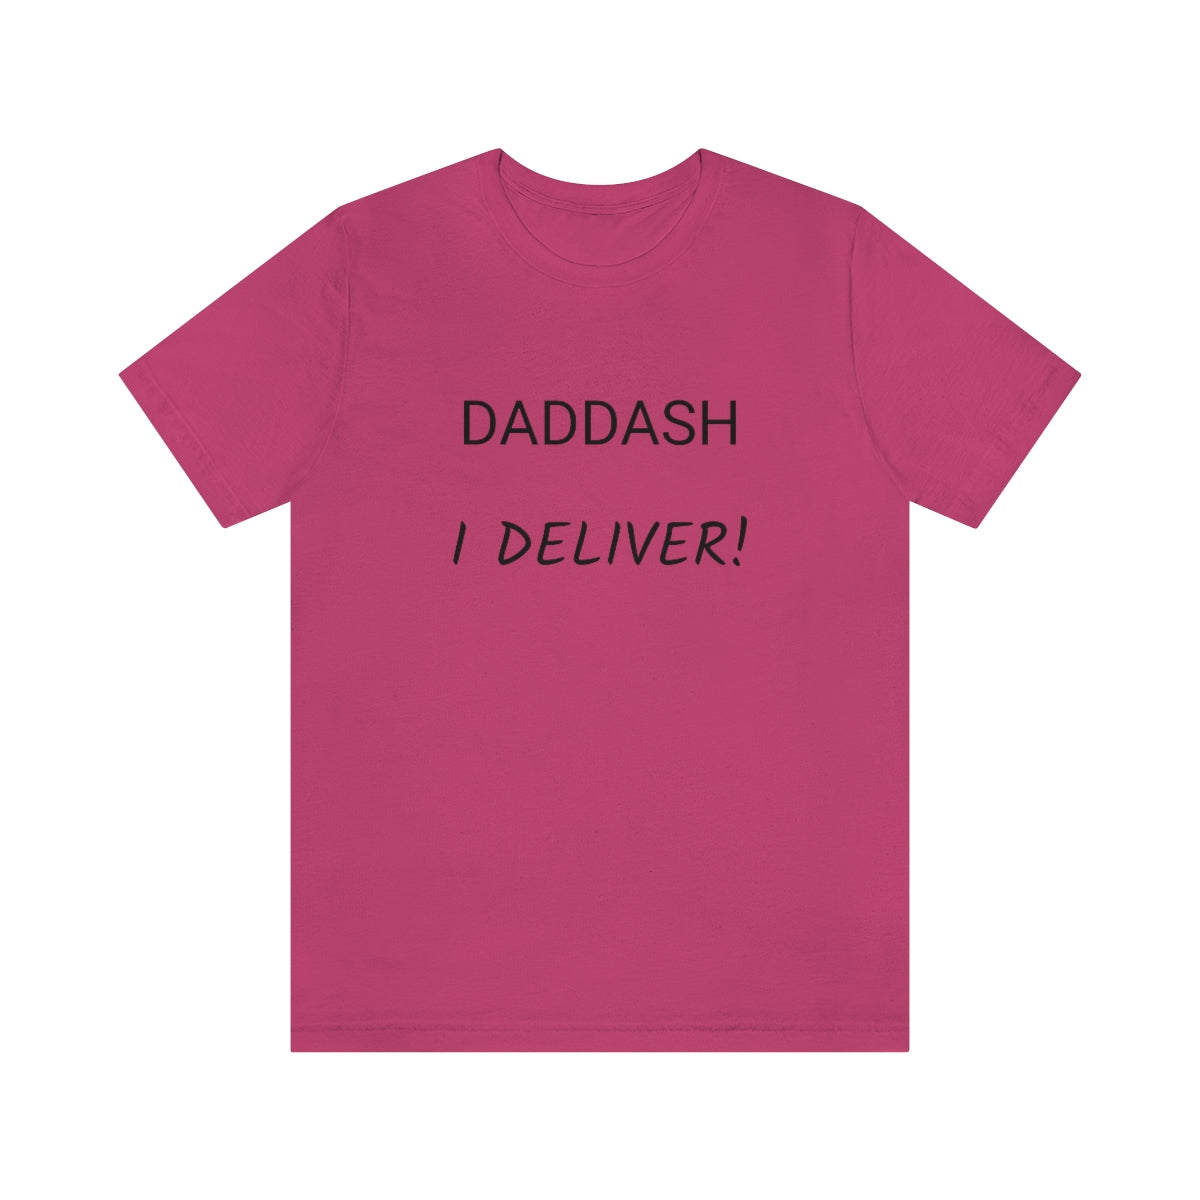 DADDASH I Deliver! - Unisex Jersey Short Sleeve Tee